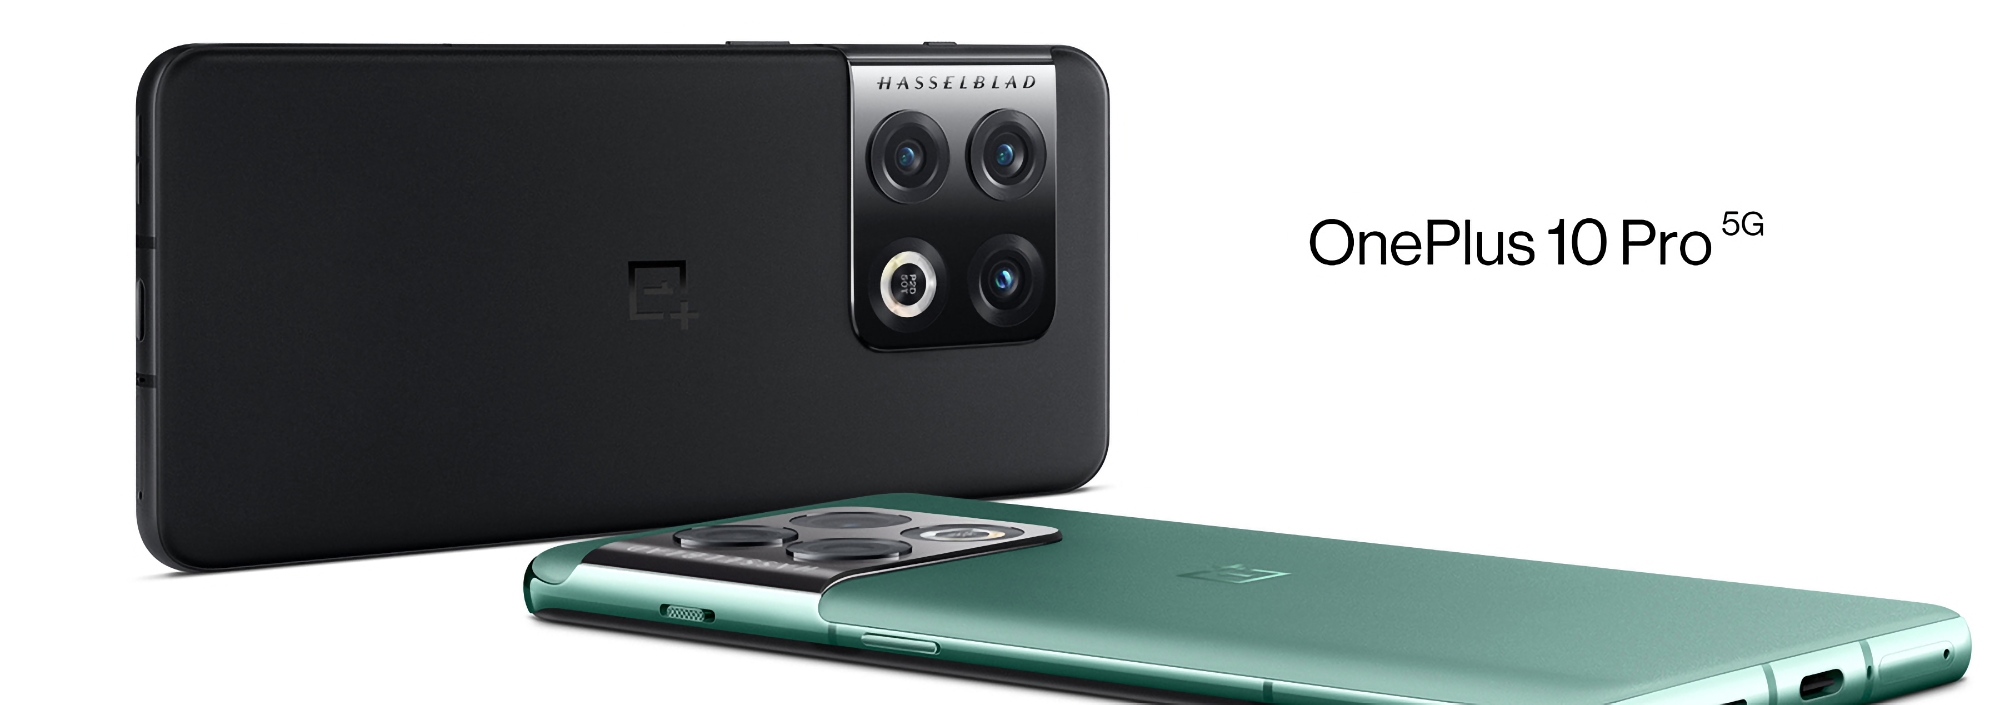 OnePlus 10 Pro-brugere er begyndt at modtage OxygenOS 14.0.0.700: Hvad er nyt?